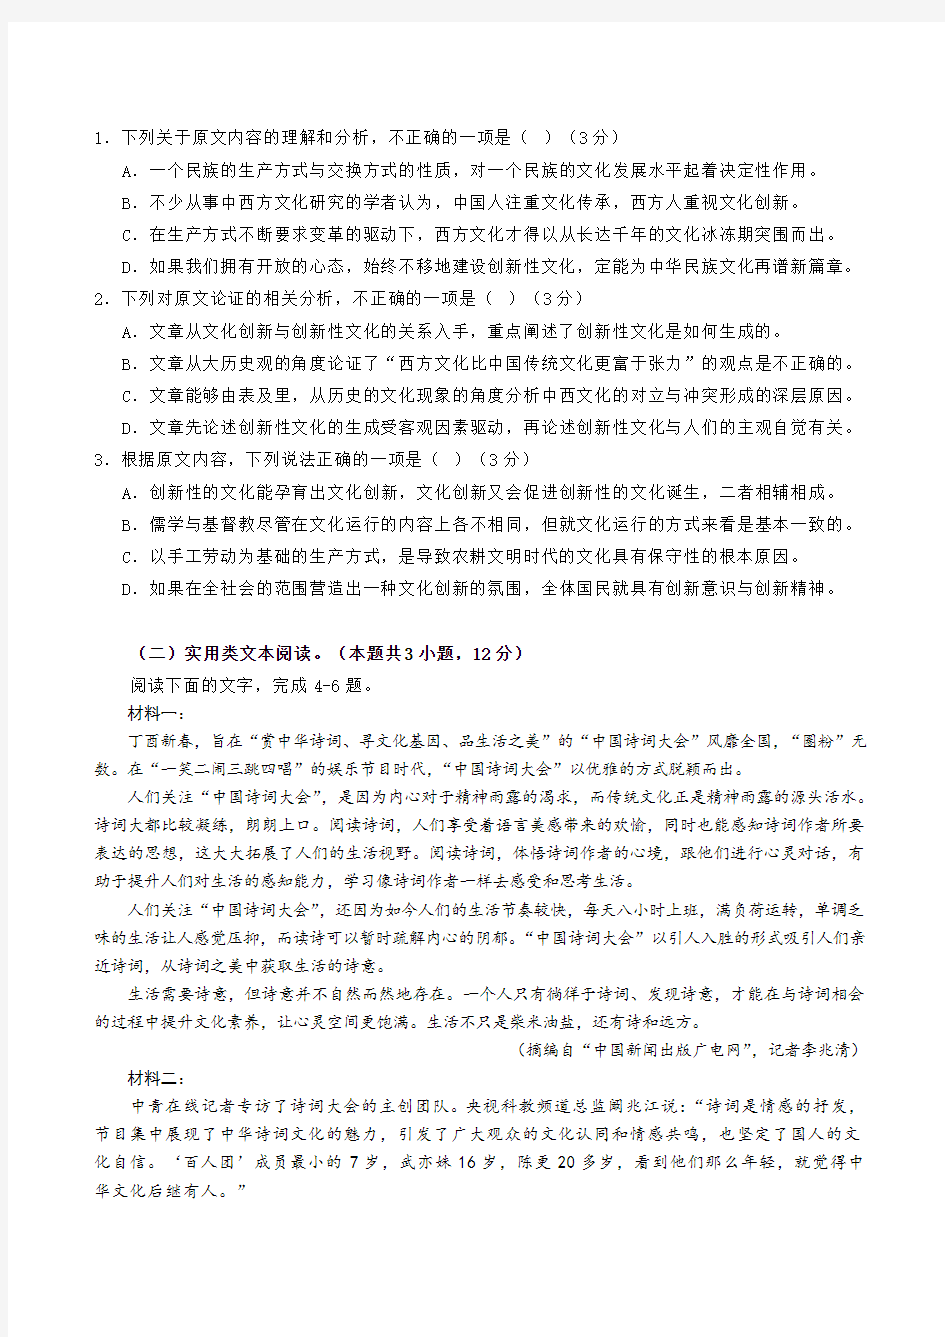 【高三模拟】湖南省长郡中学2020年高考适应性考试语文试题